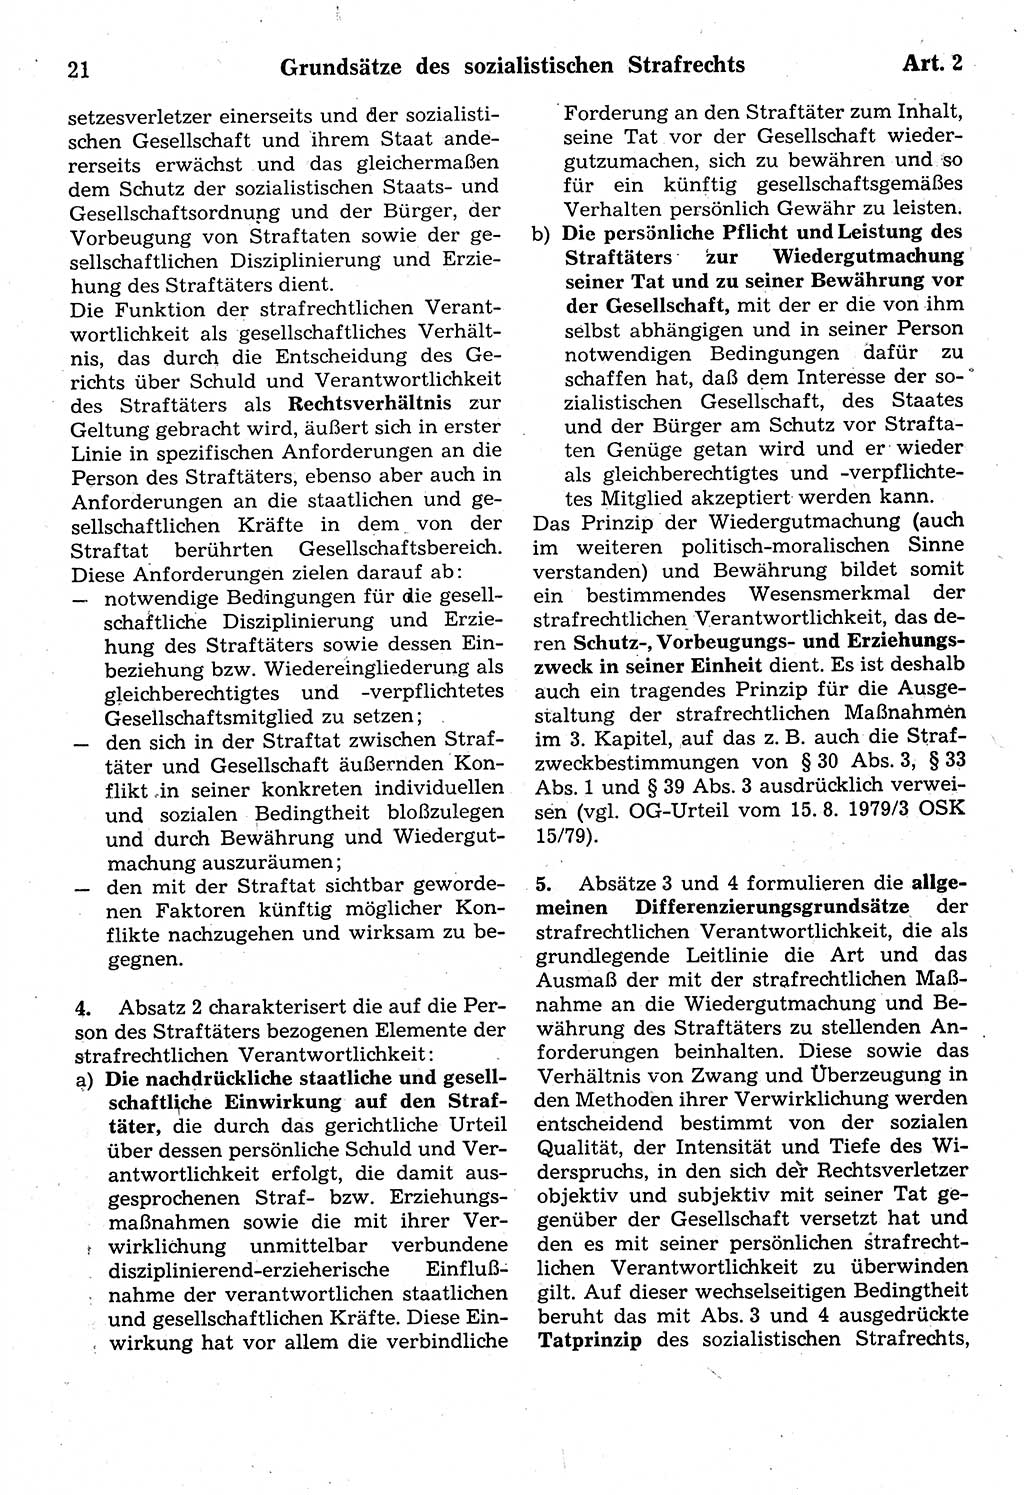 Strafrecht der Deutschen Demokratischen Republik (DDR), Kommentar zum Strafgesetzbuch (StGB) 1987, Seite 21 (Strafr. DDR Komm. StGB 1987, S. 21)